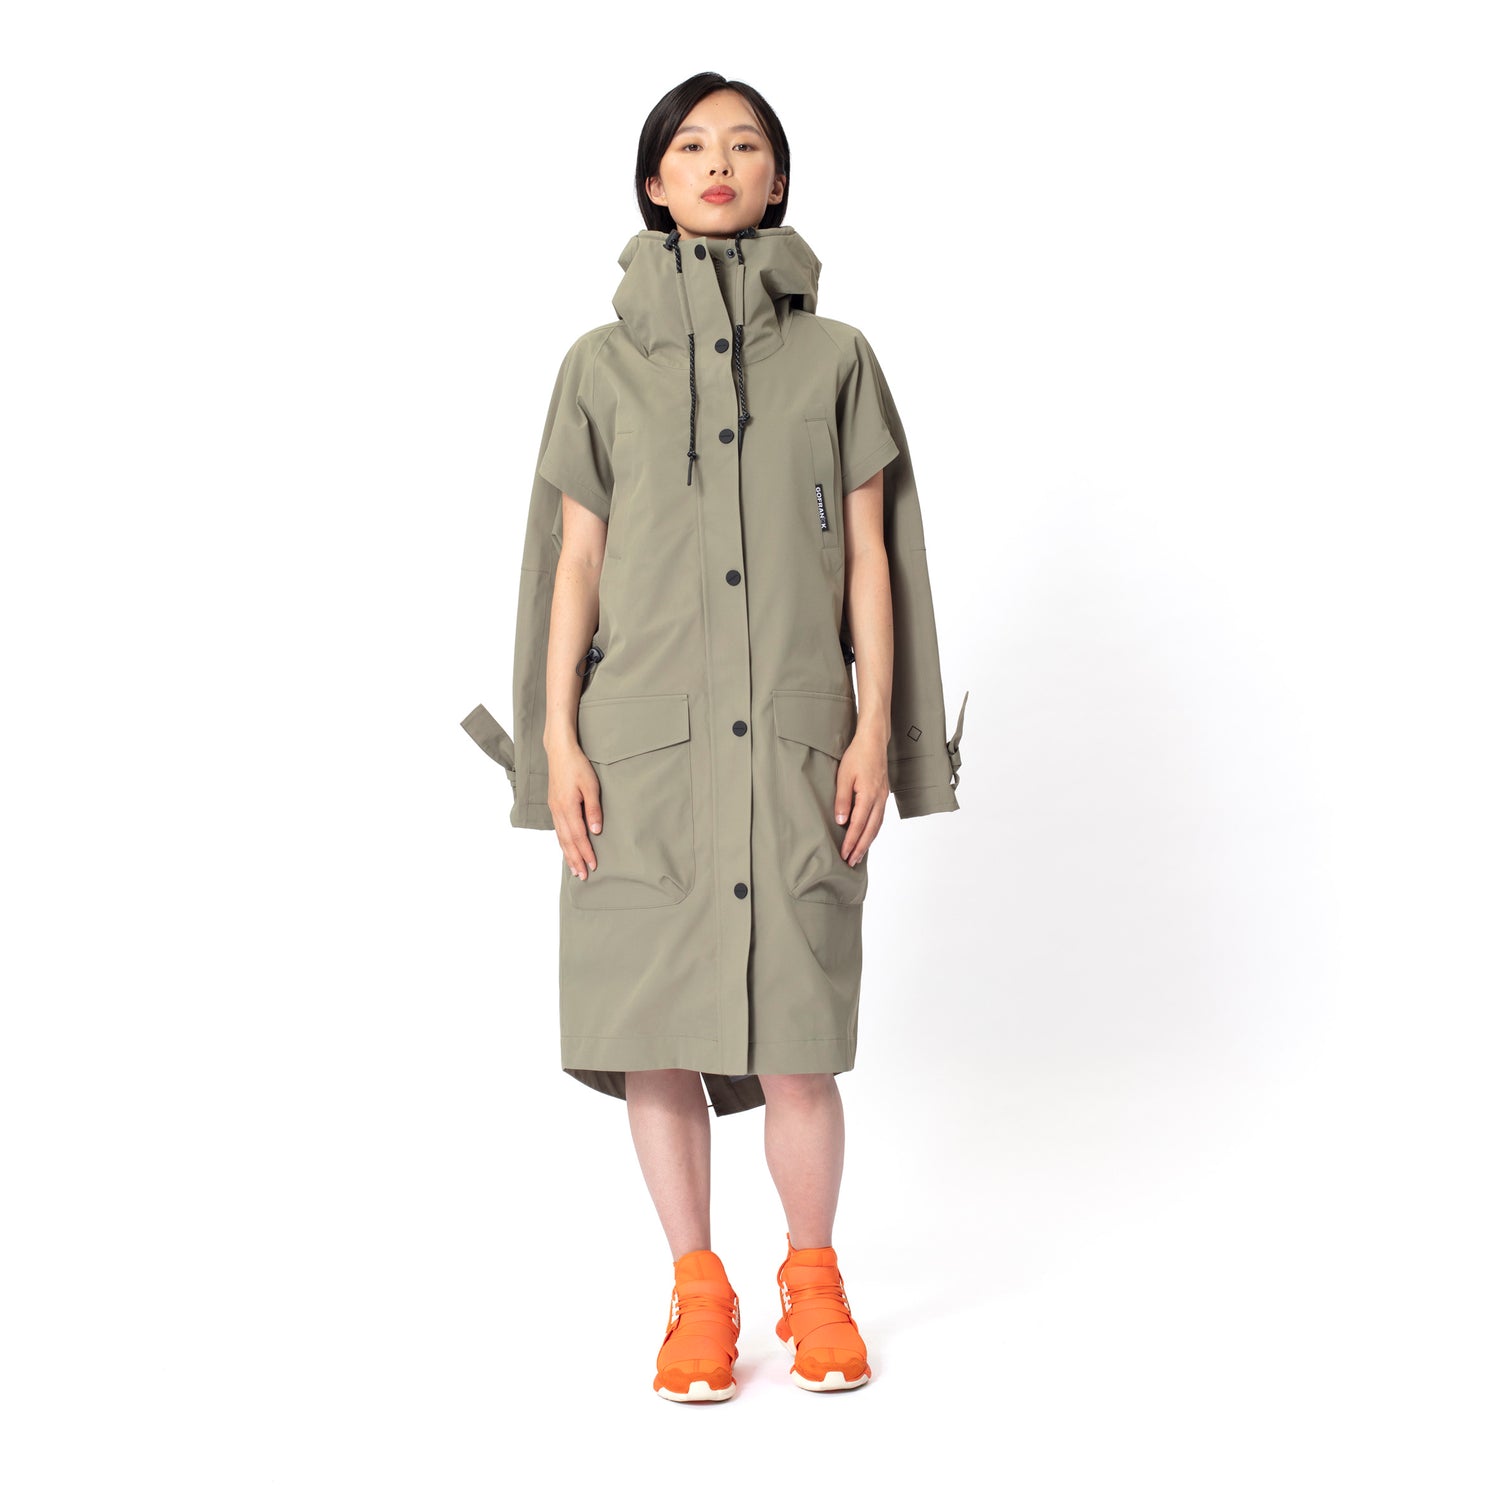 GOFRANCK-HOT-SUMMER-Product-Image-women-rainjacket